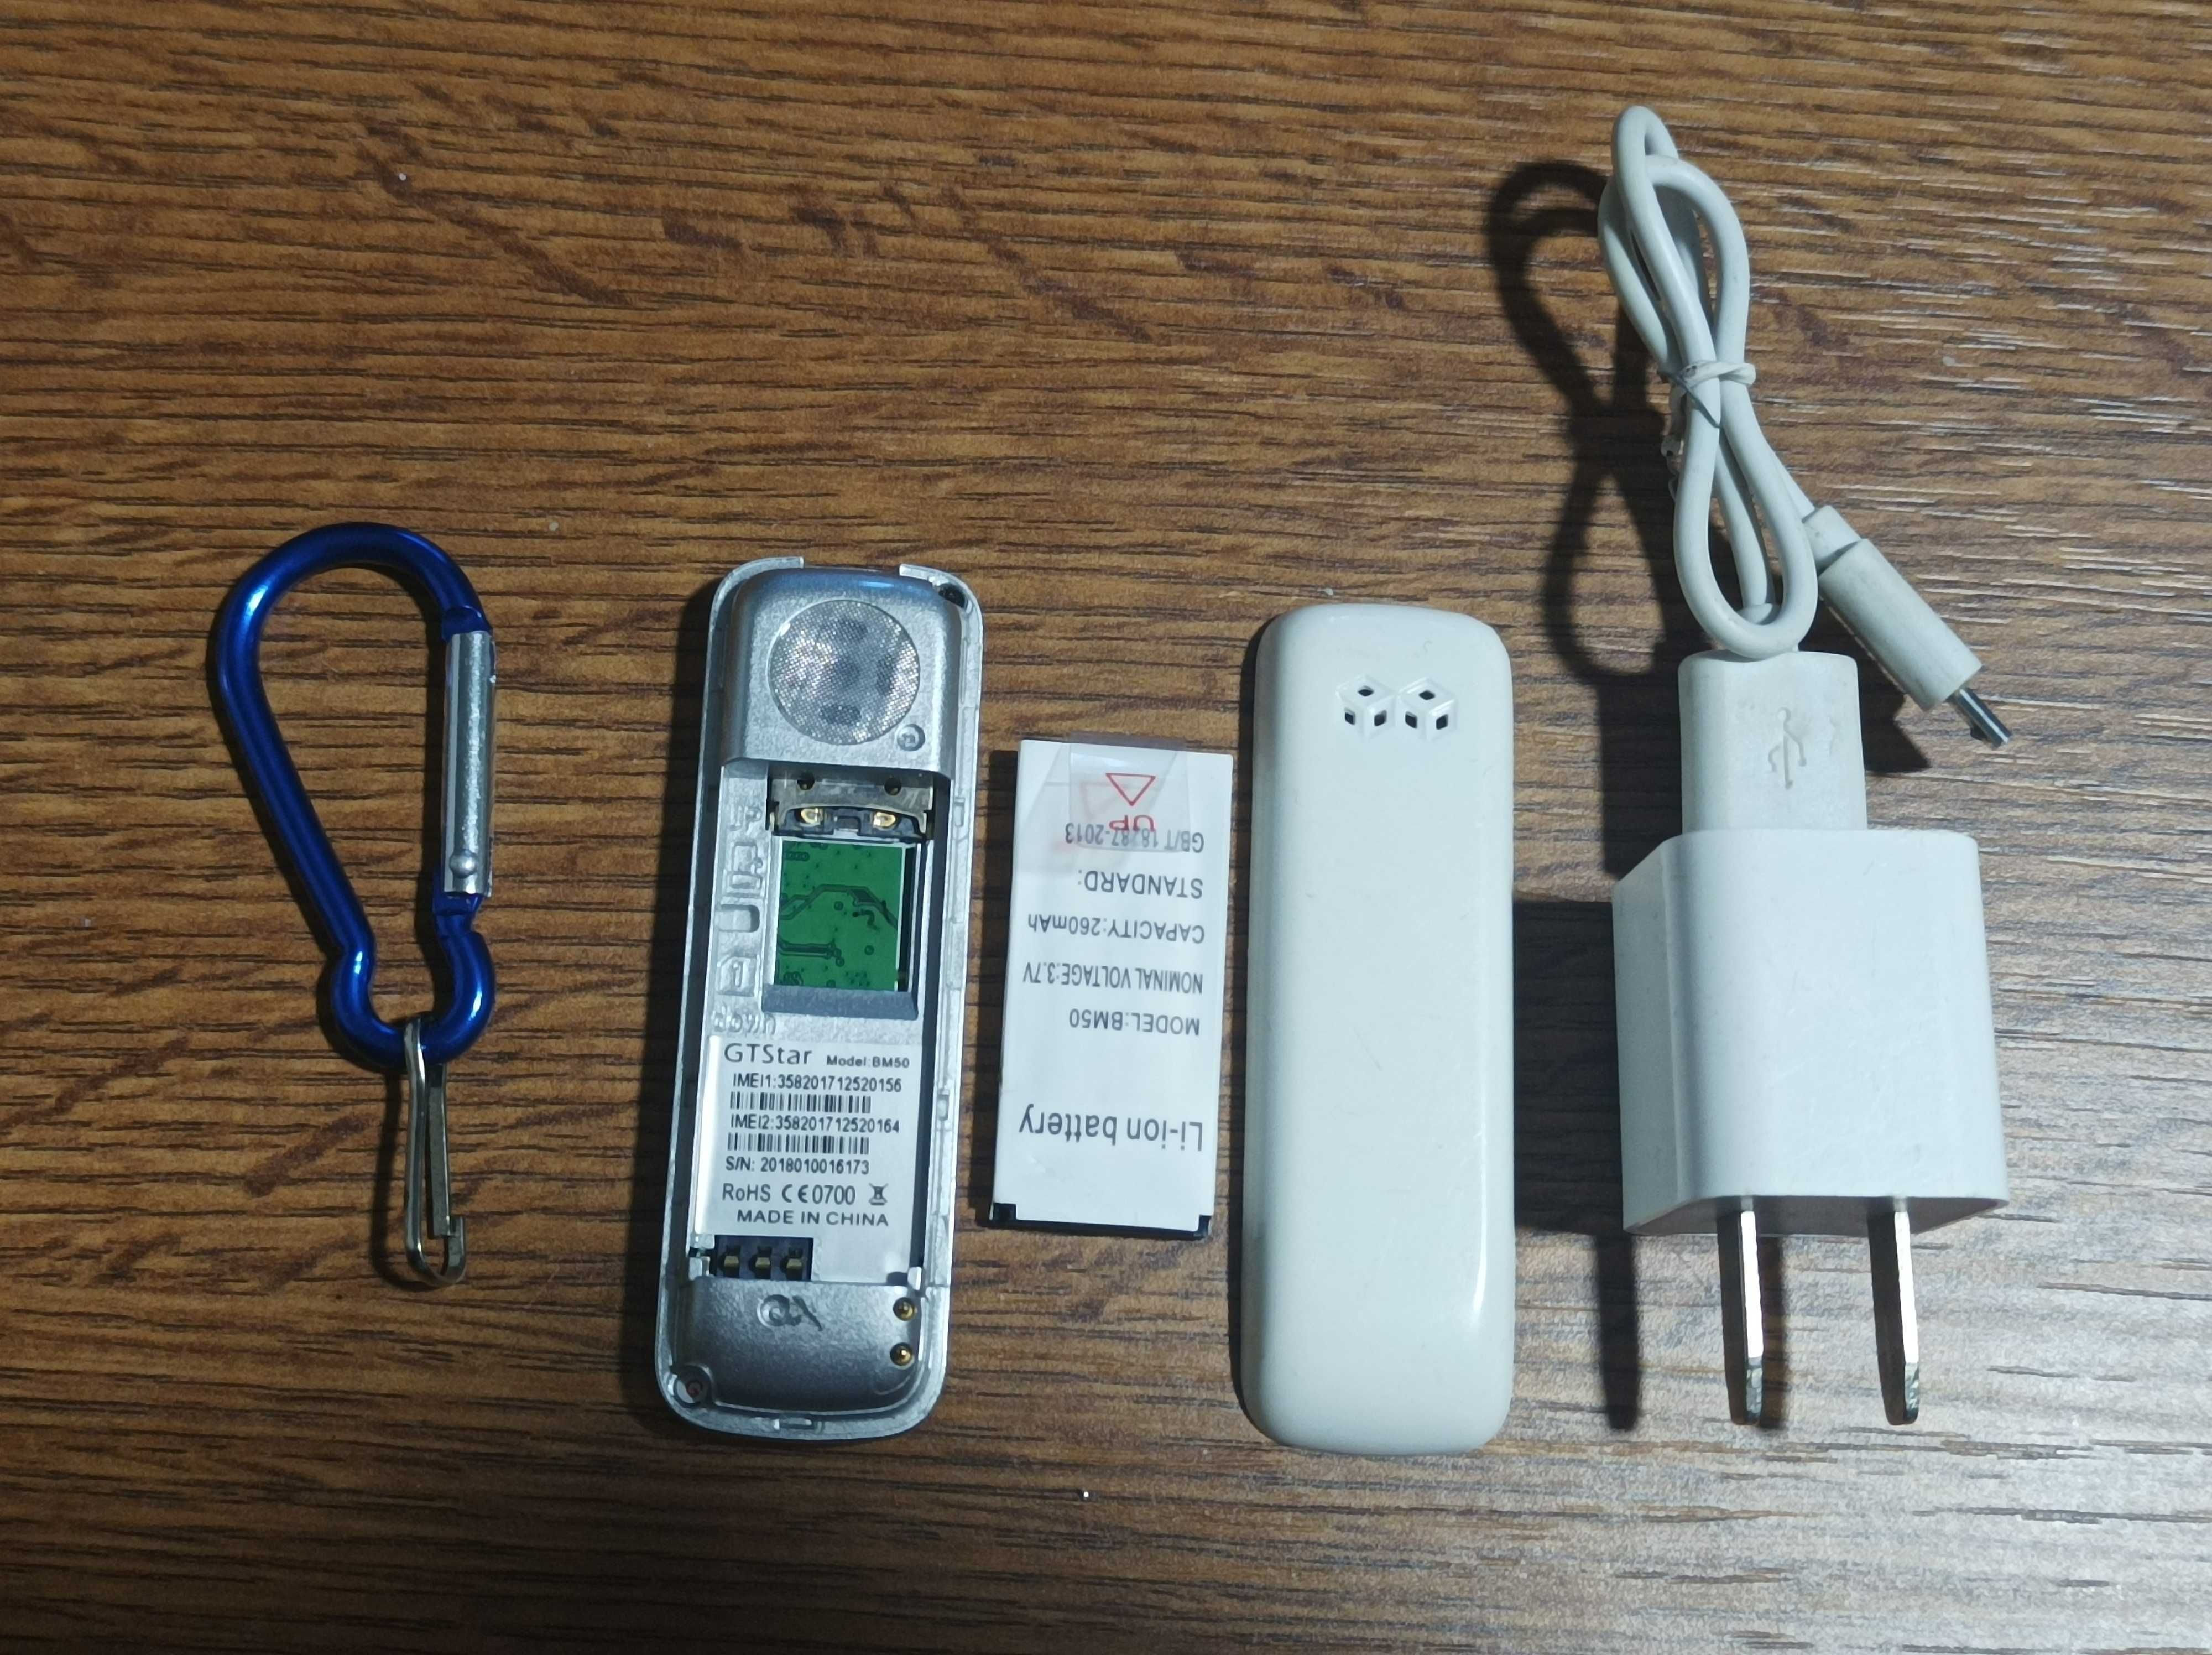 Mini Telefon breloc cu dual SIM, sd-card, carabina si incarcator